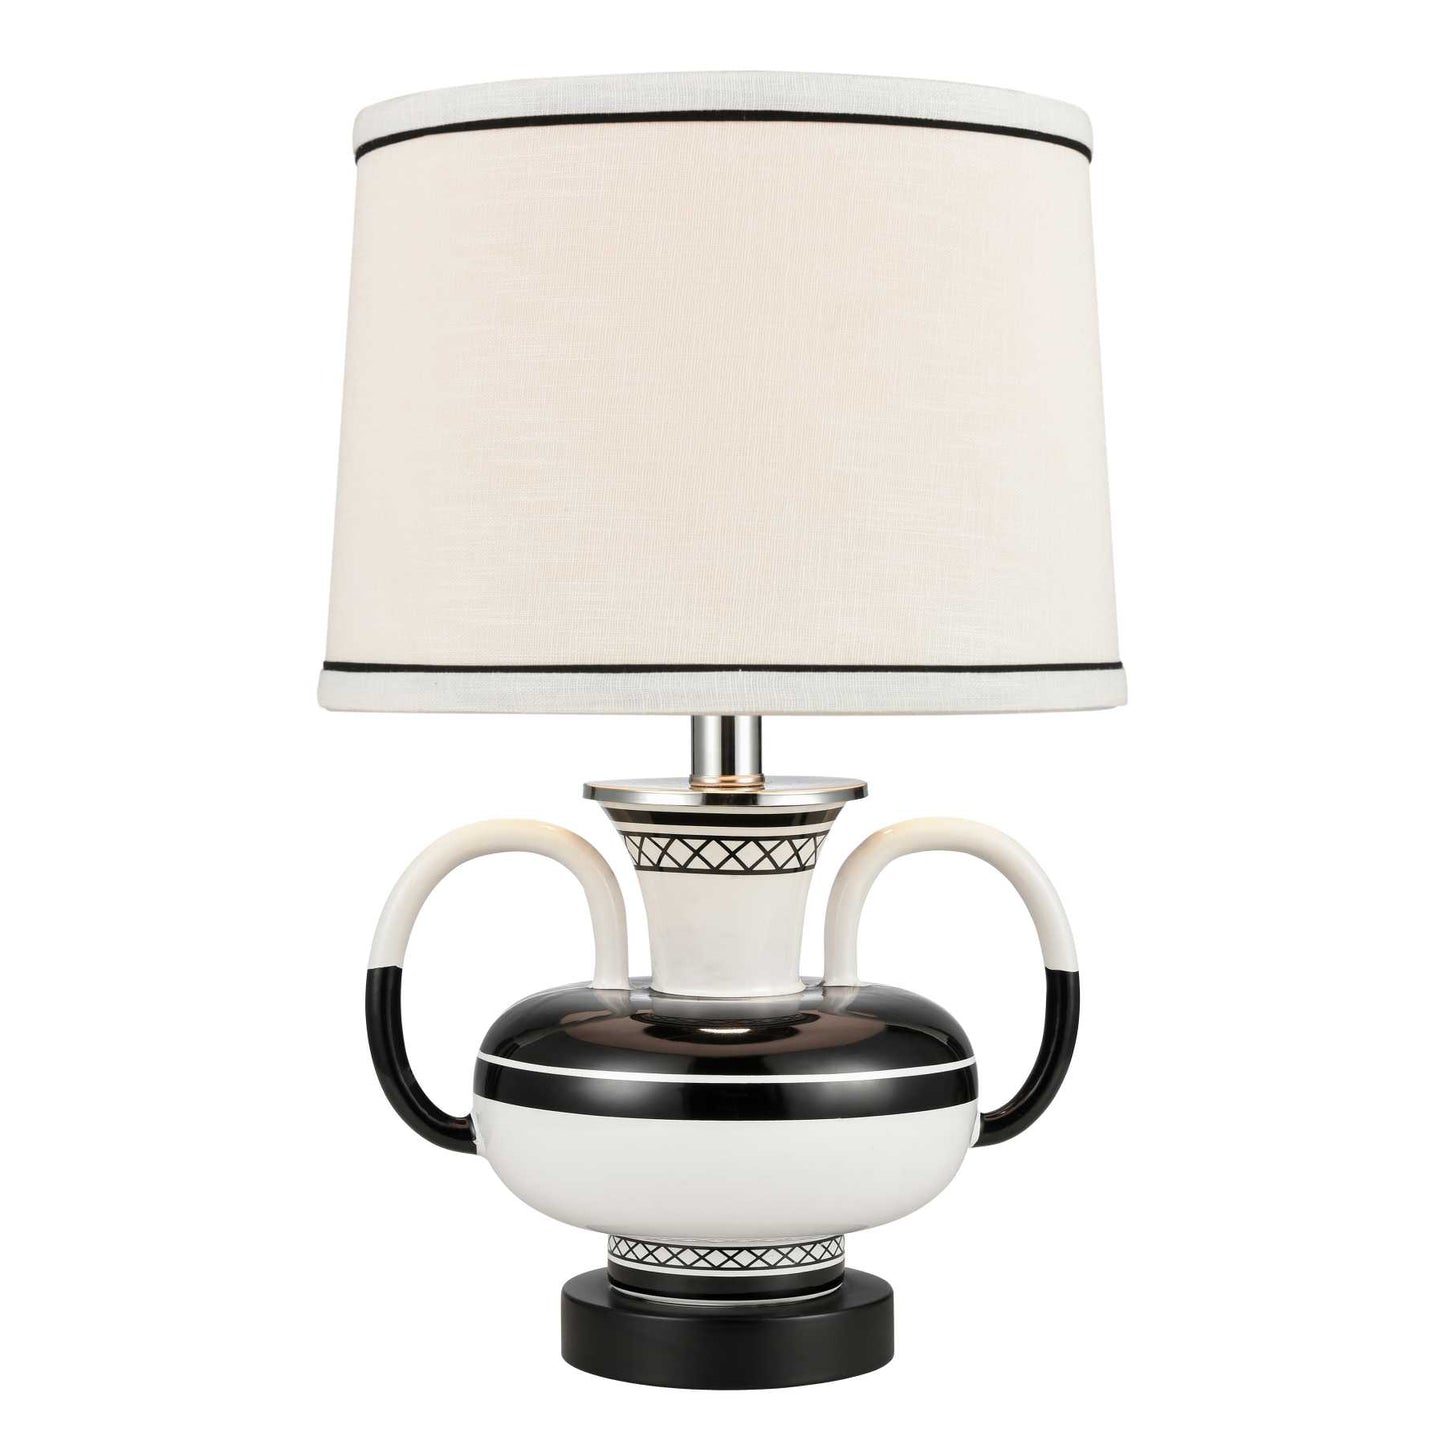 Luxor Gardens 18'' High 1-Light Table Lamp - White By ELK |Table Lamps |Modishstore 